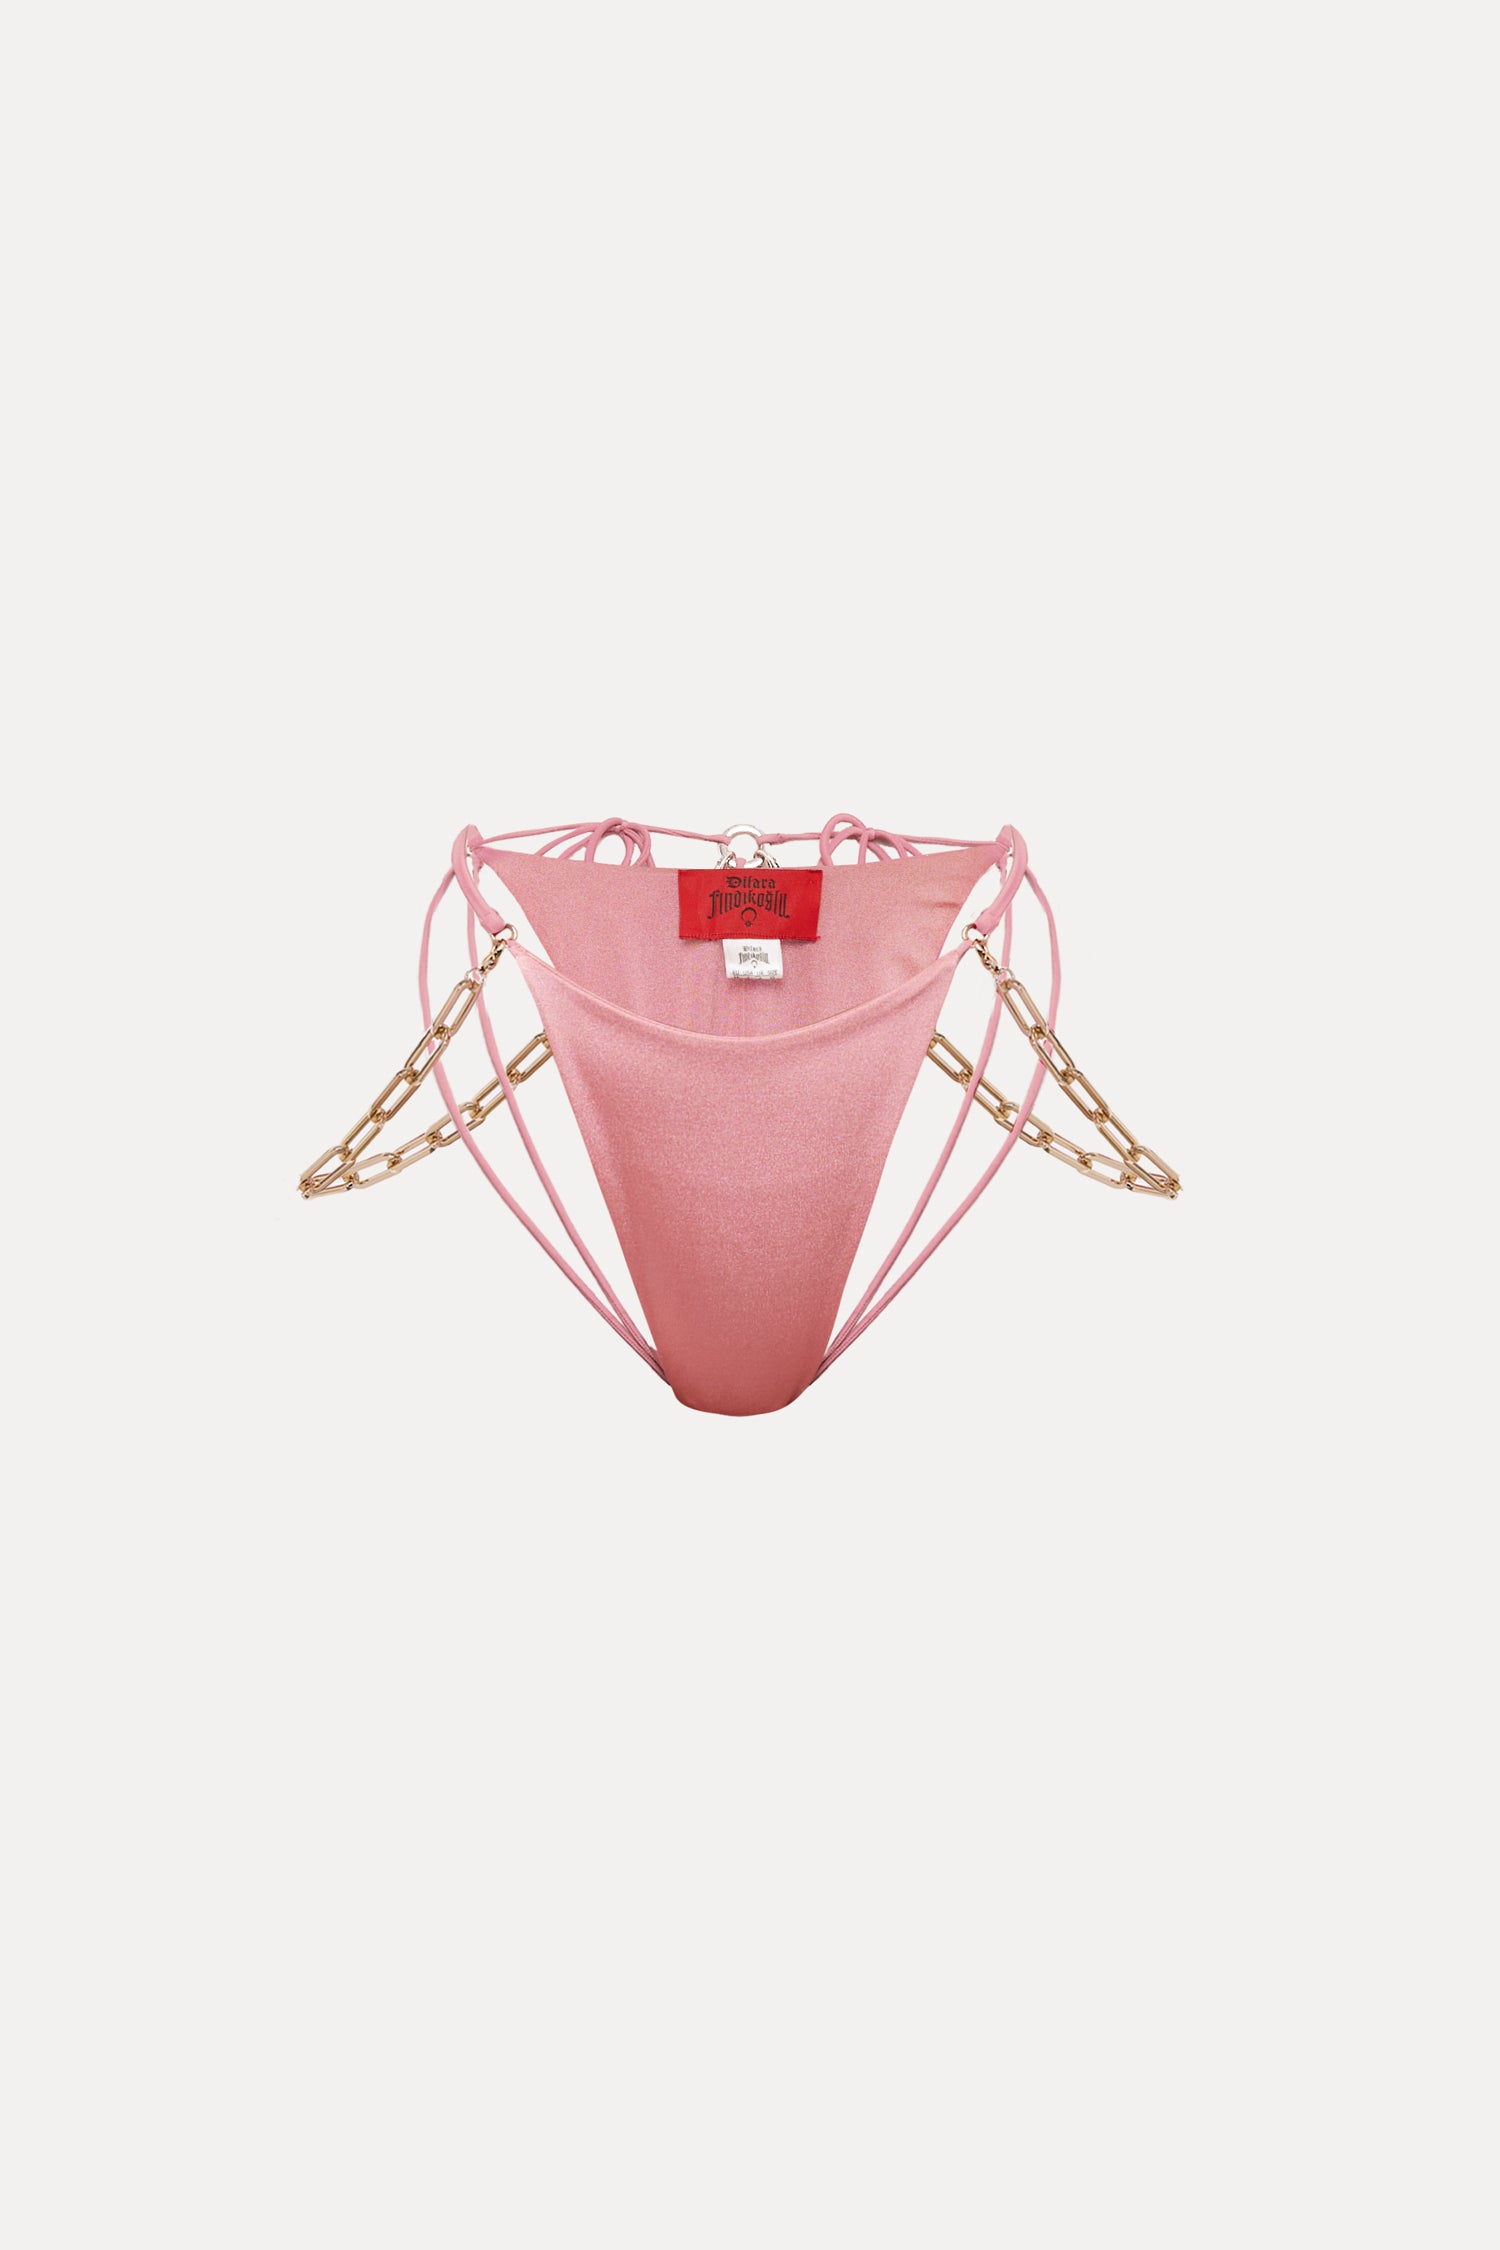 Belly Dancer Bikini Bottom – - Findikoglu Dilara Pink